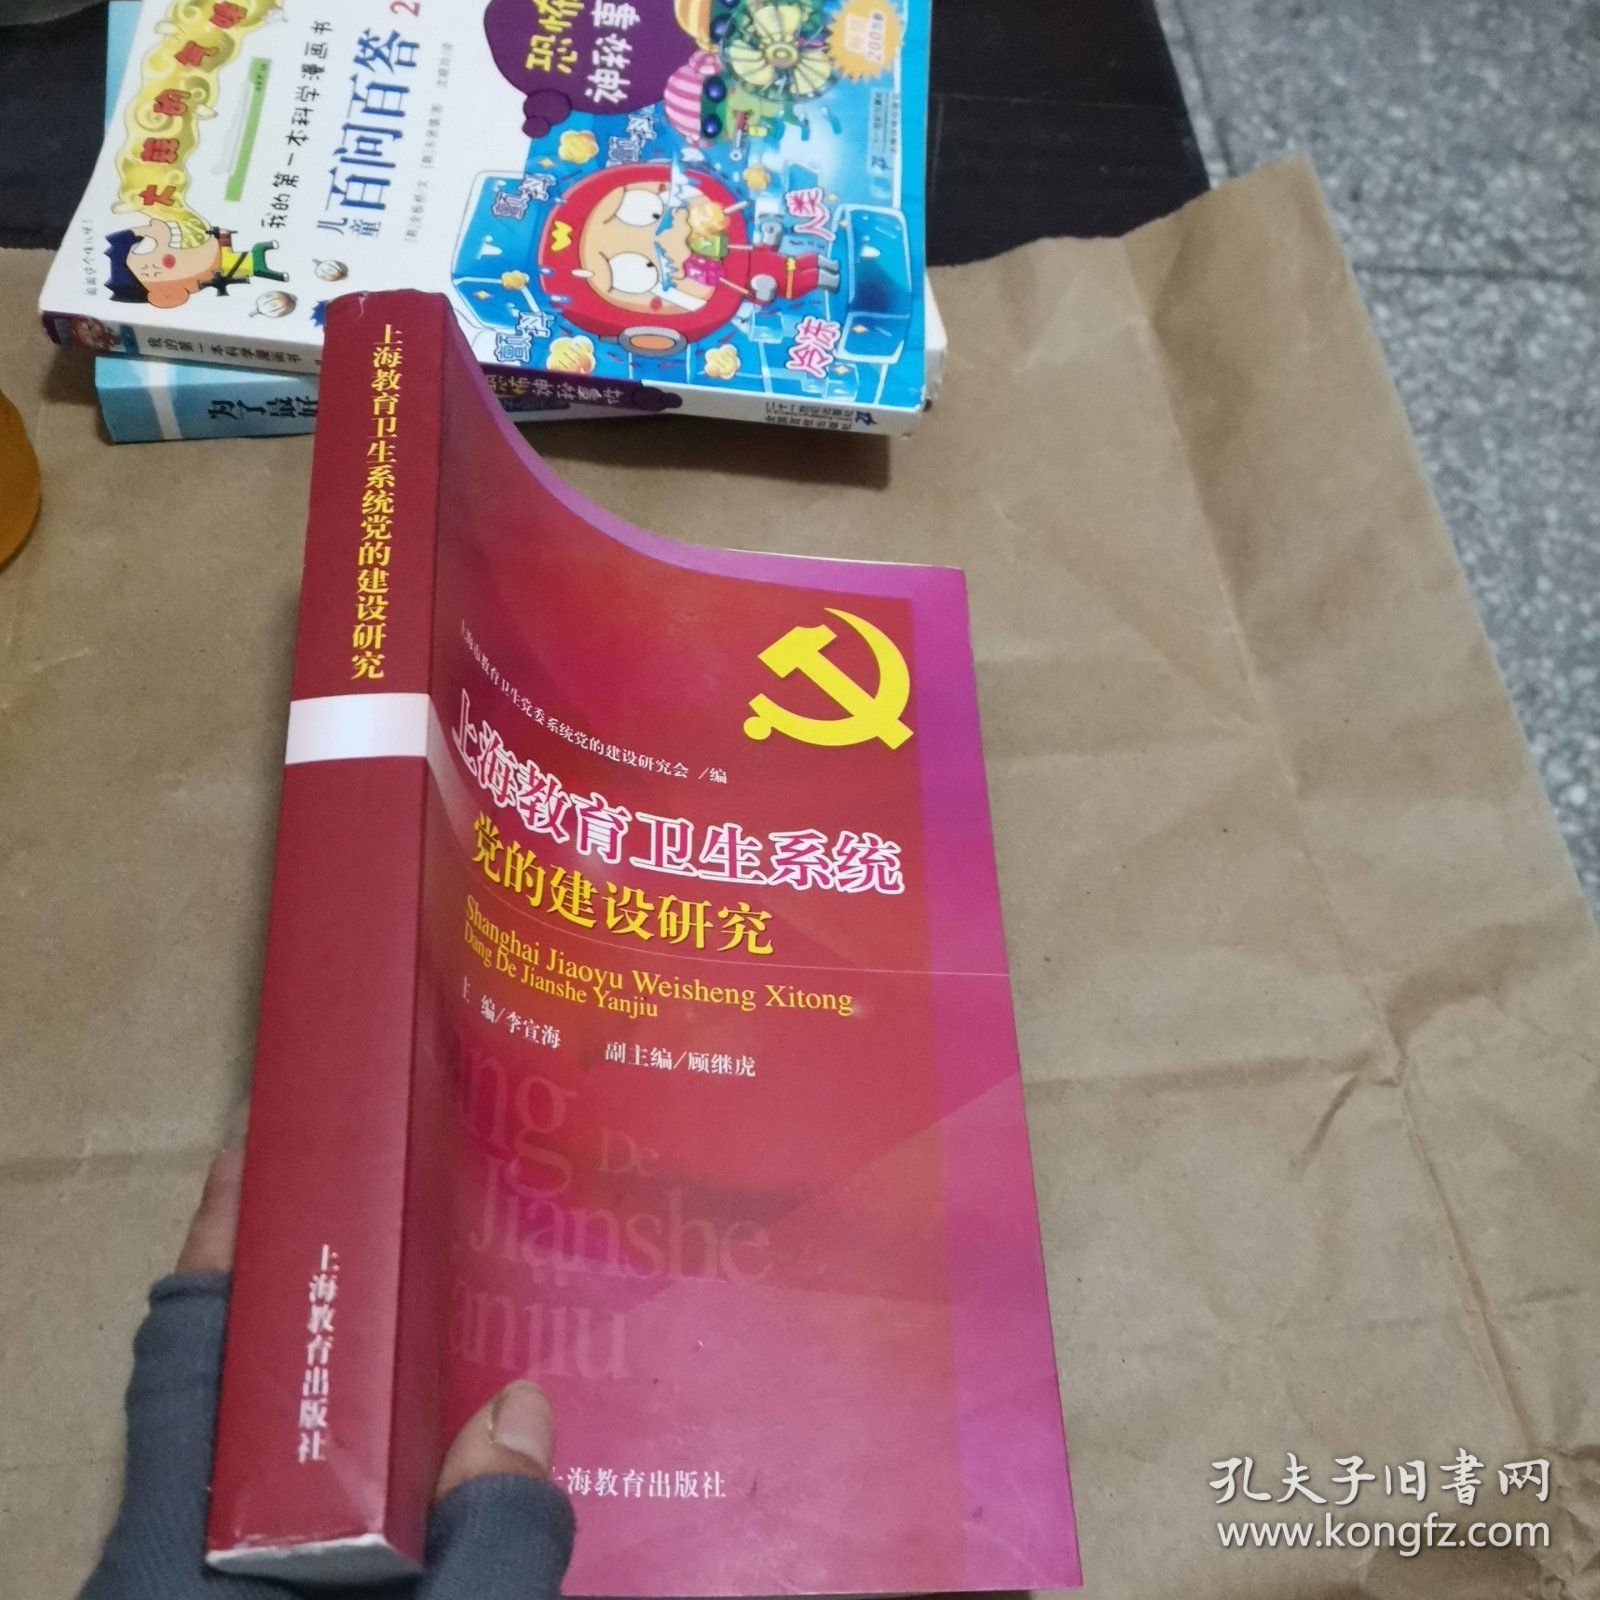 上海教育卫生系统 党的建设研究